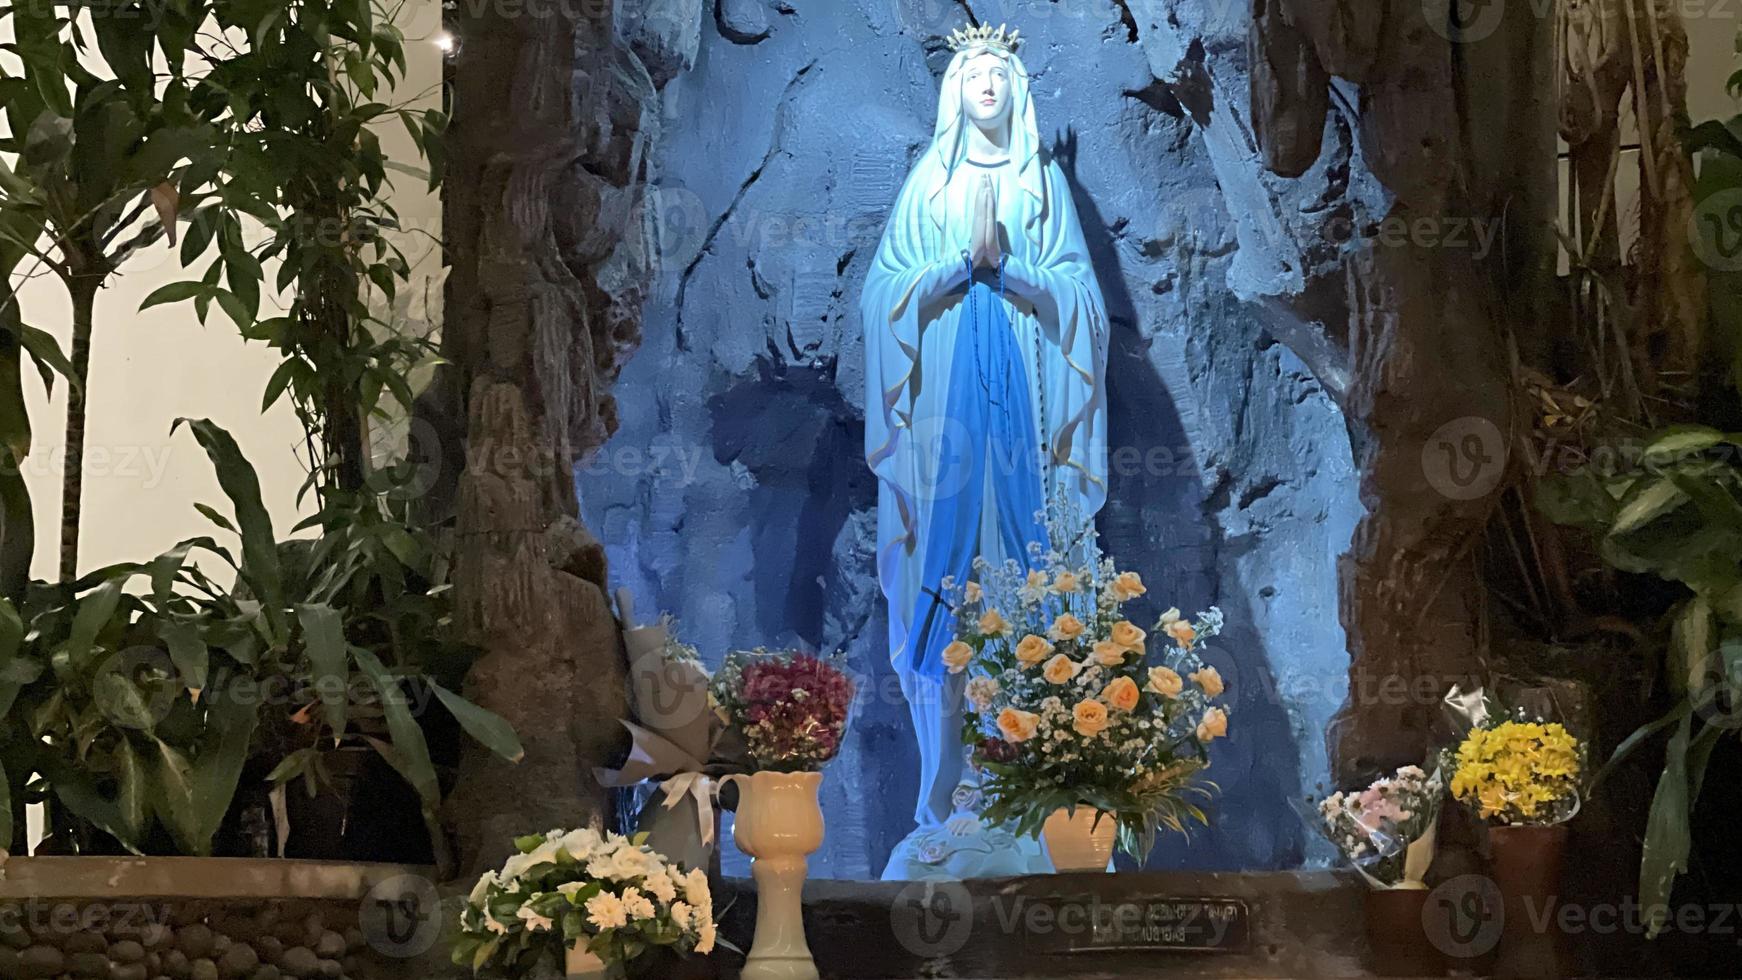 die höhle der jungfrau maria, statue der jungfrau maria in einer felshöhle kapelle katholische kirche mit tropischer vegetation foto